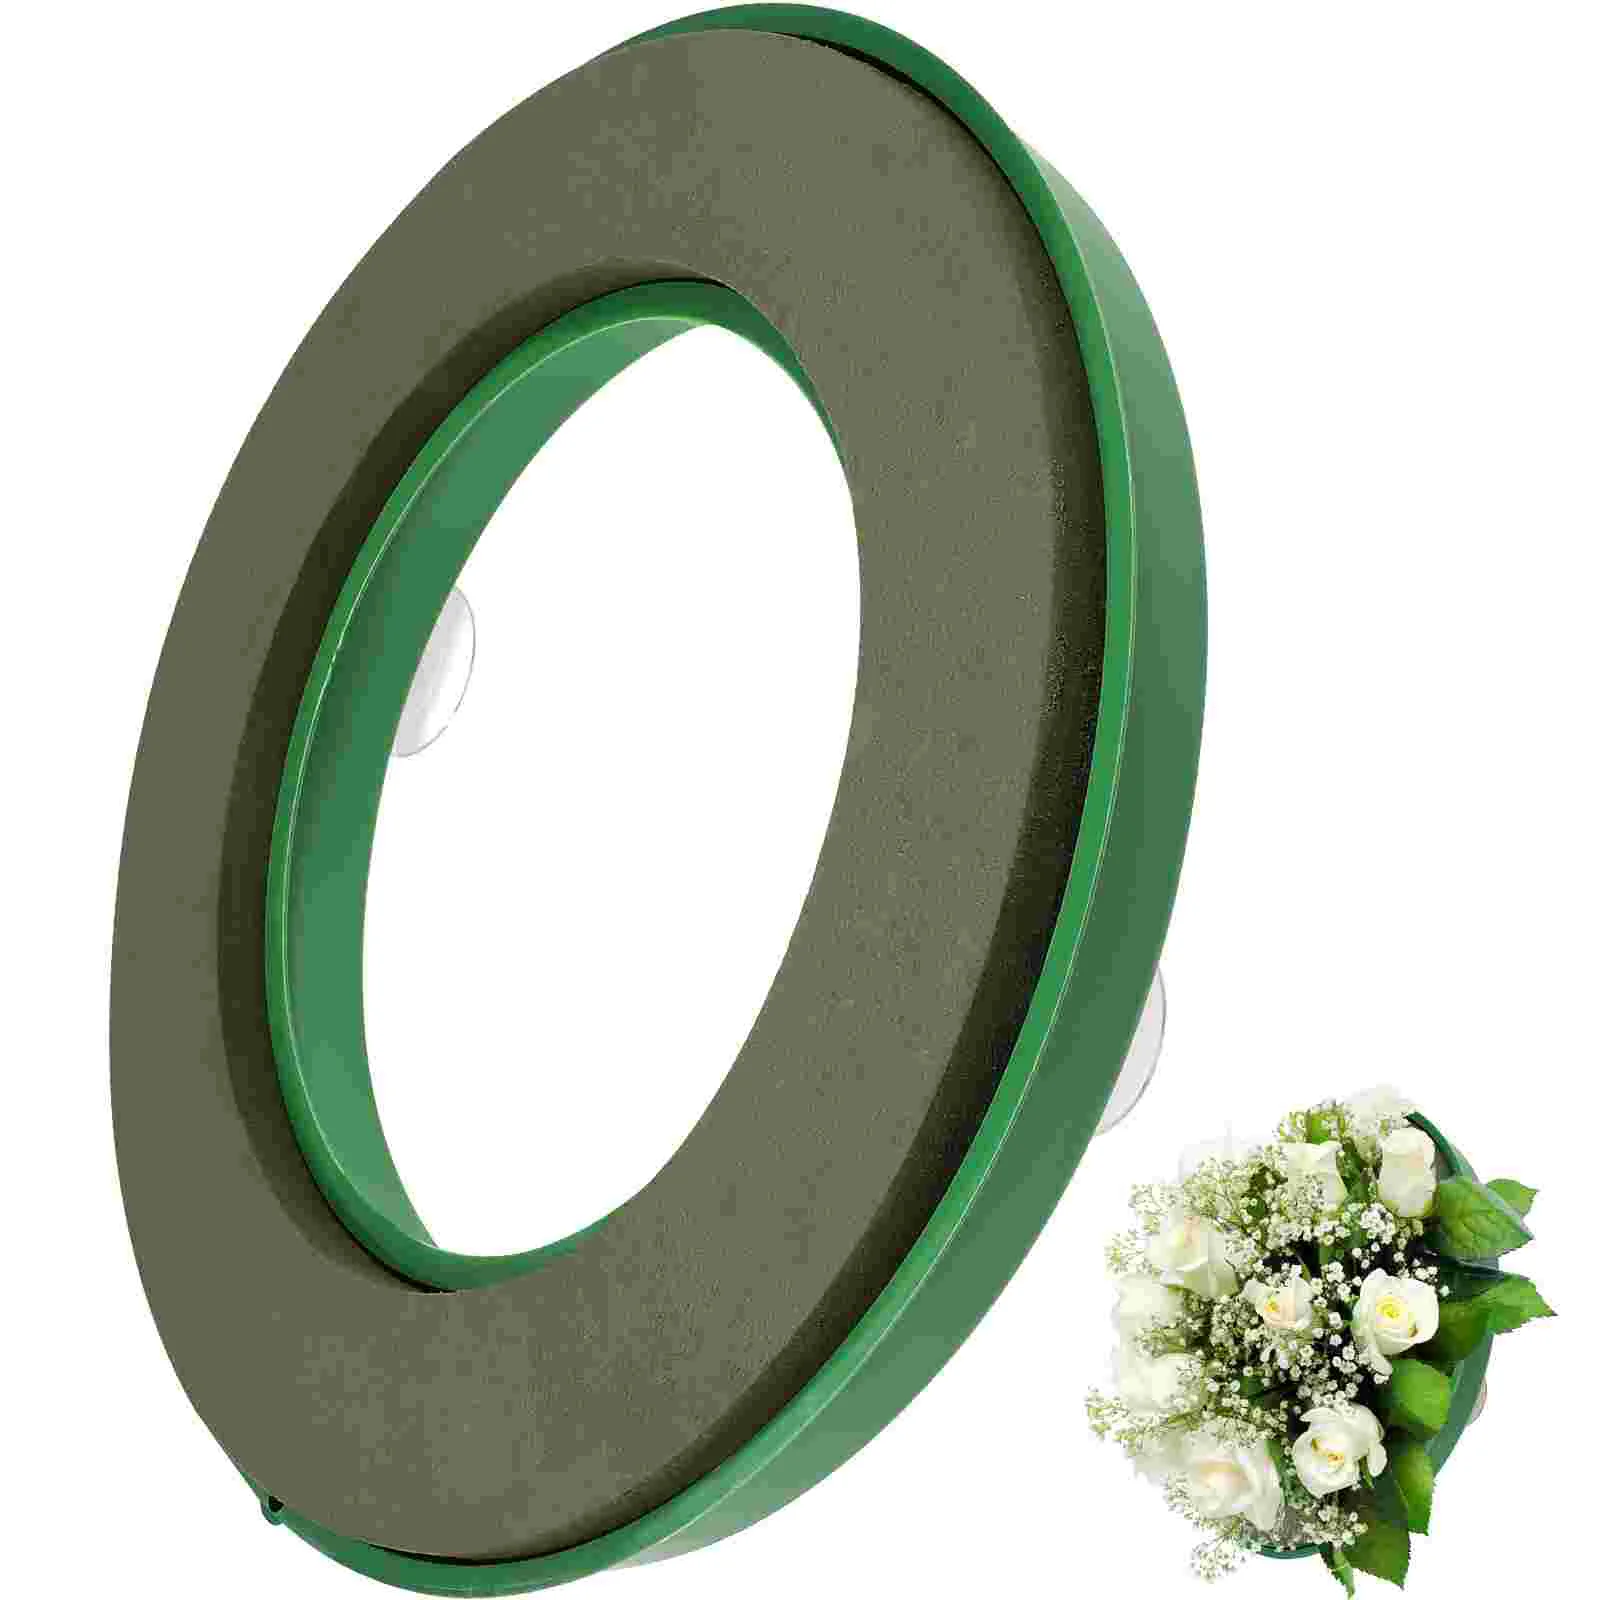 Craft Foam Wreath Form Wreath Hoop Garland Form Wreath Circle Wreath Ring Holder